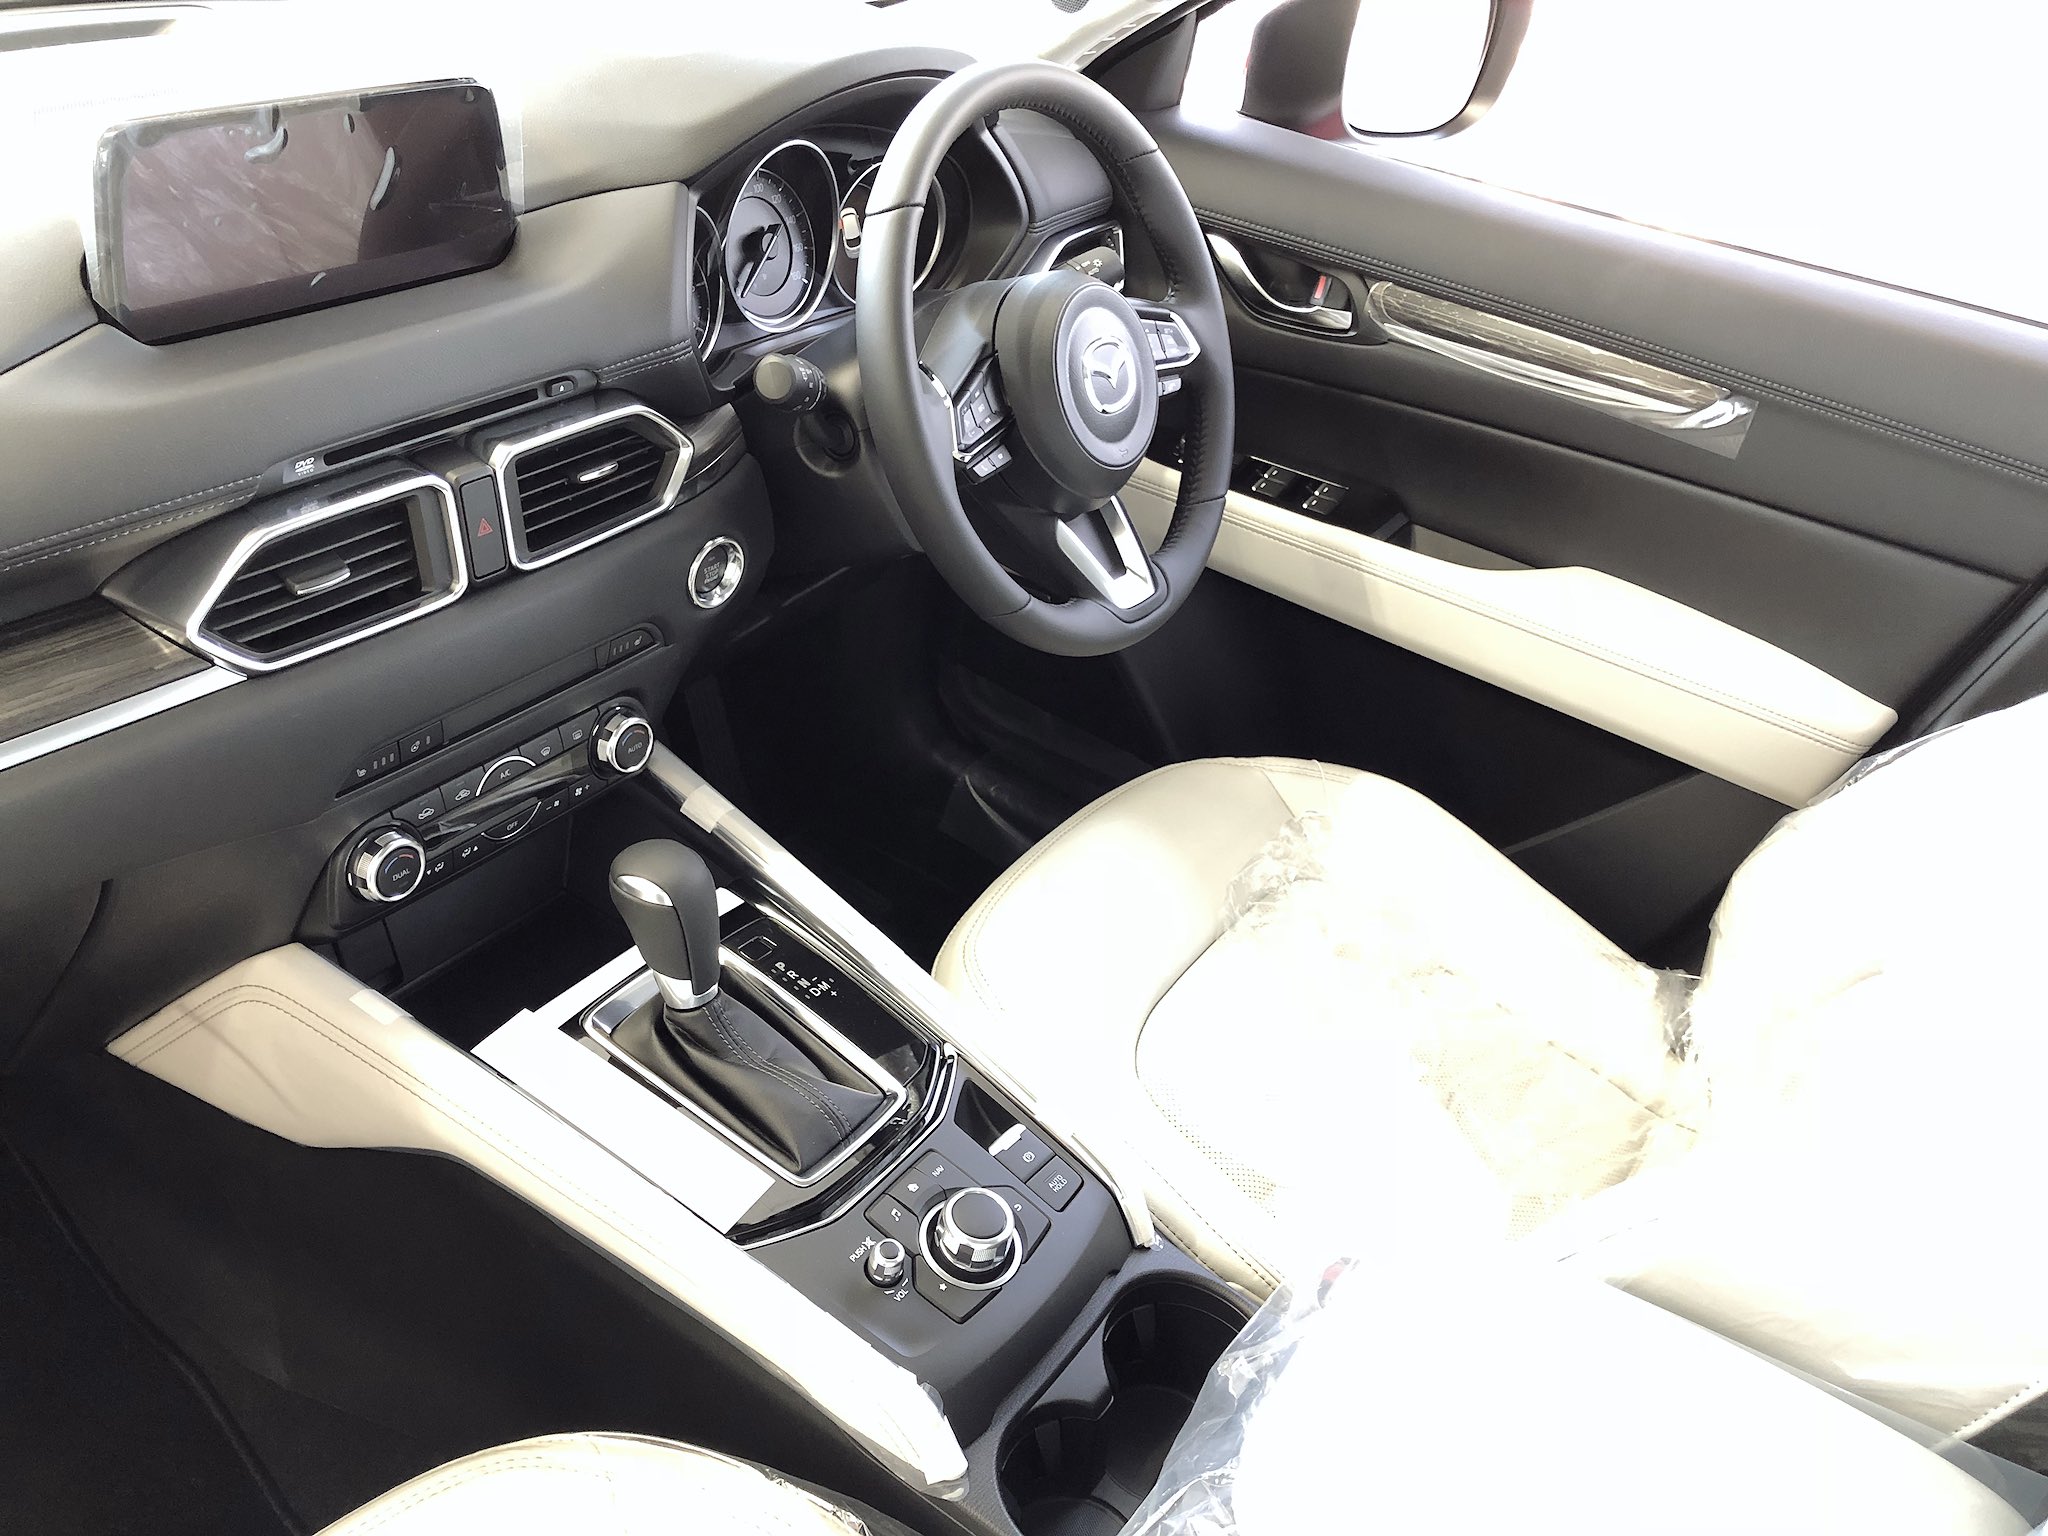 ট ইট র マツダオートザム稲沢 最新のcx 5の展示車がやってきました 白内装のlパッケージにソウルレッドがかっこいいです Cx5 Mazda